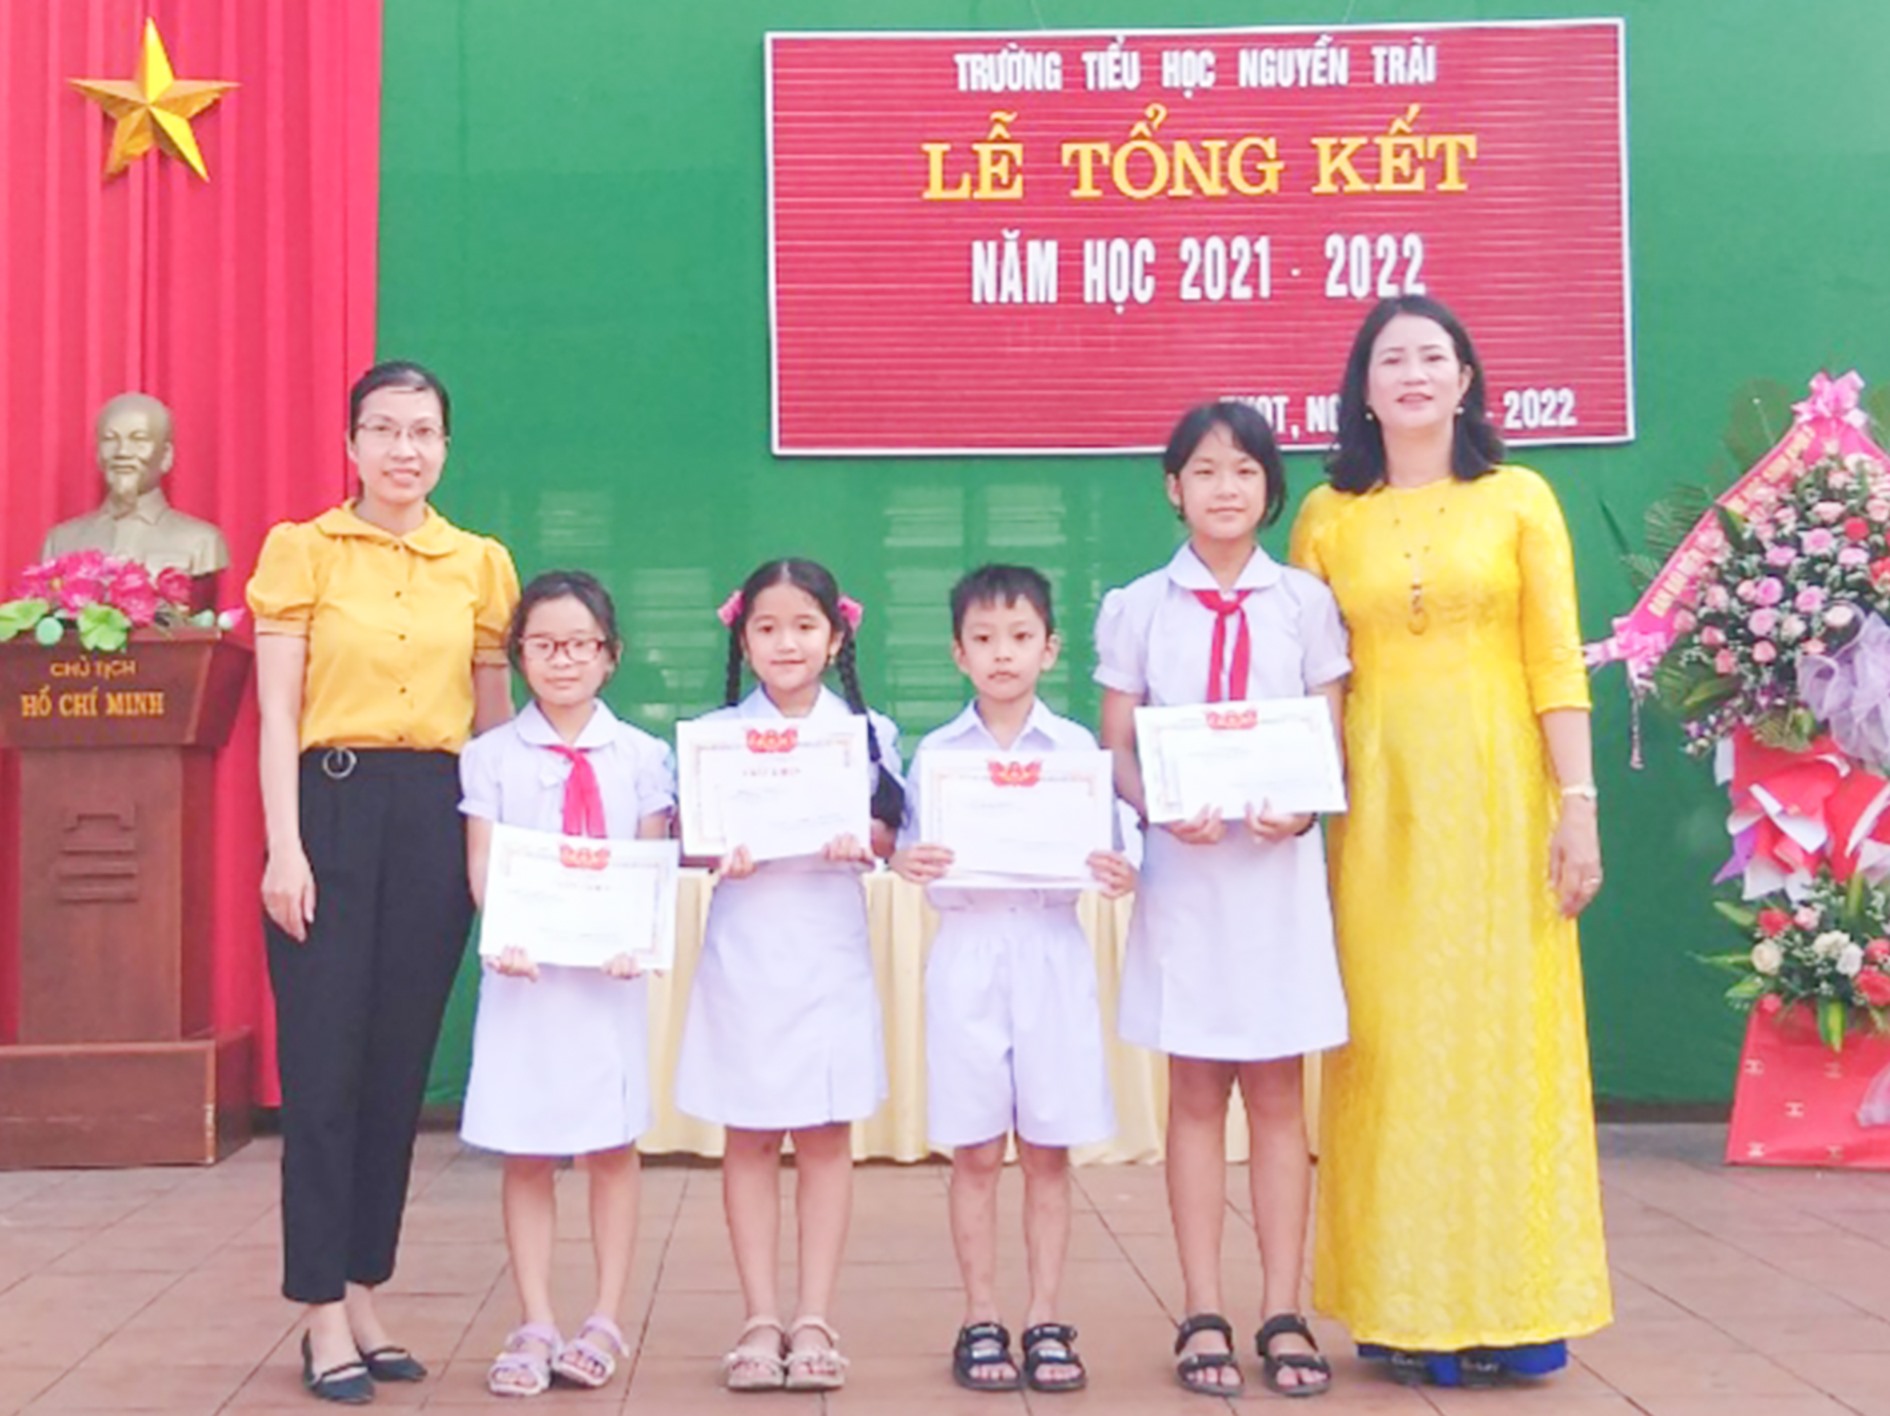 Hiệu trưởng Nguyễn Thị Bảy (ngoài cùng bên phải) trao thưởng cho học sinh xuất sắc của trường -Ảnh: TÚ LINH